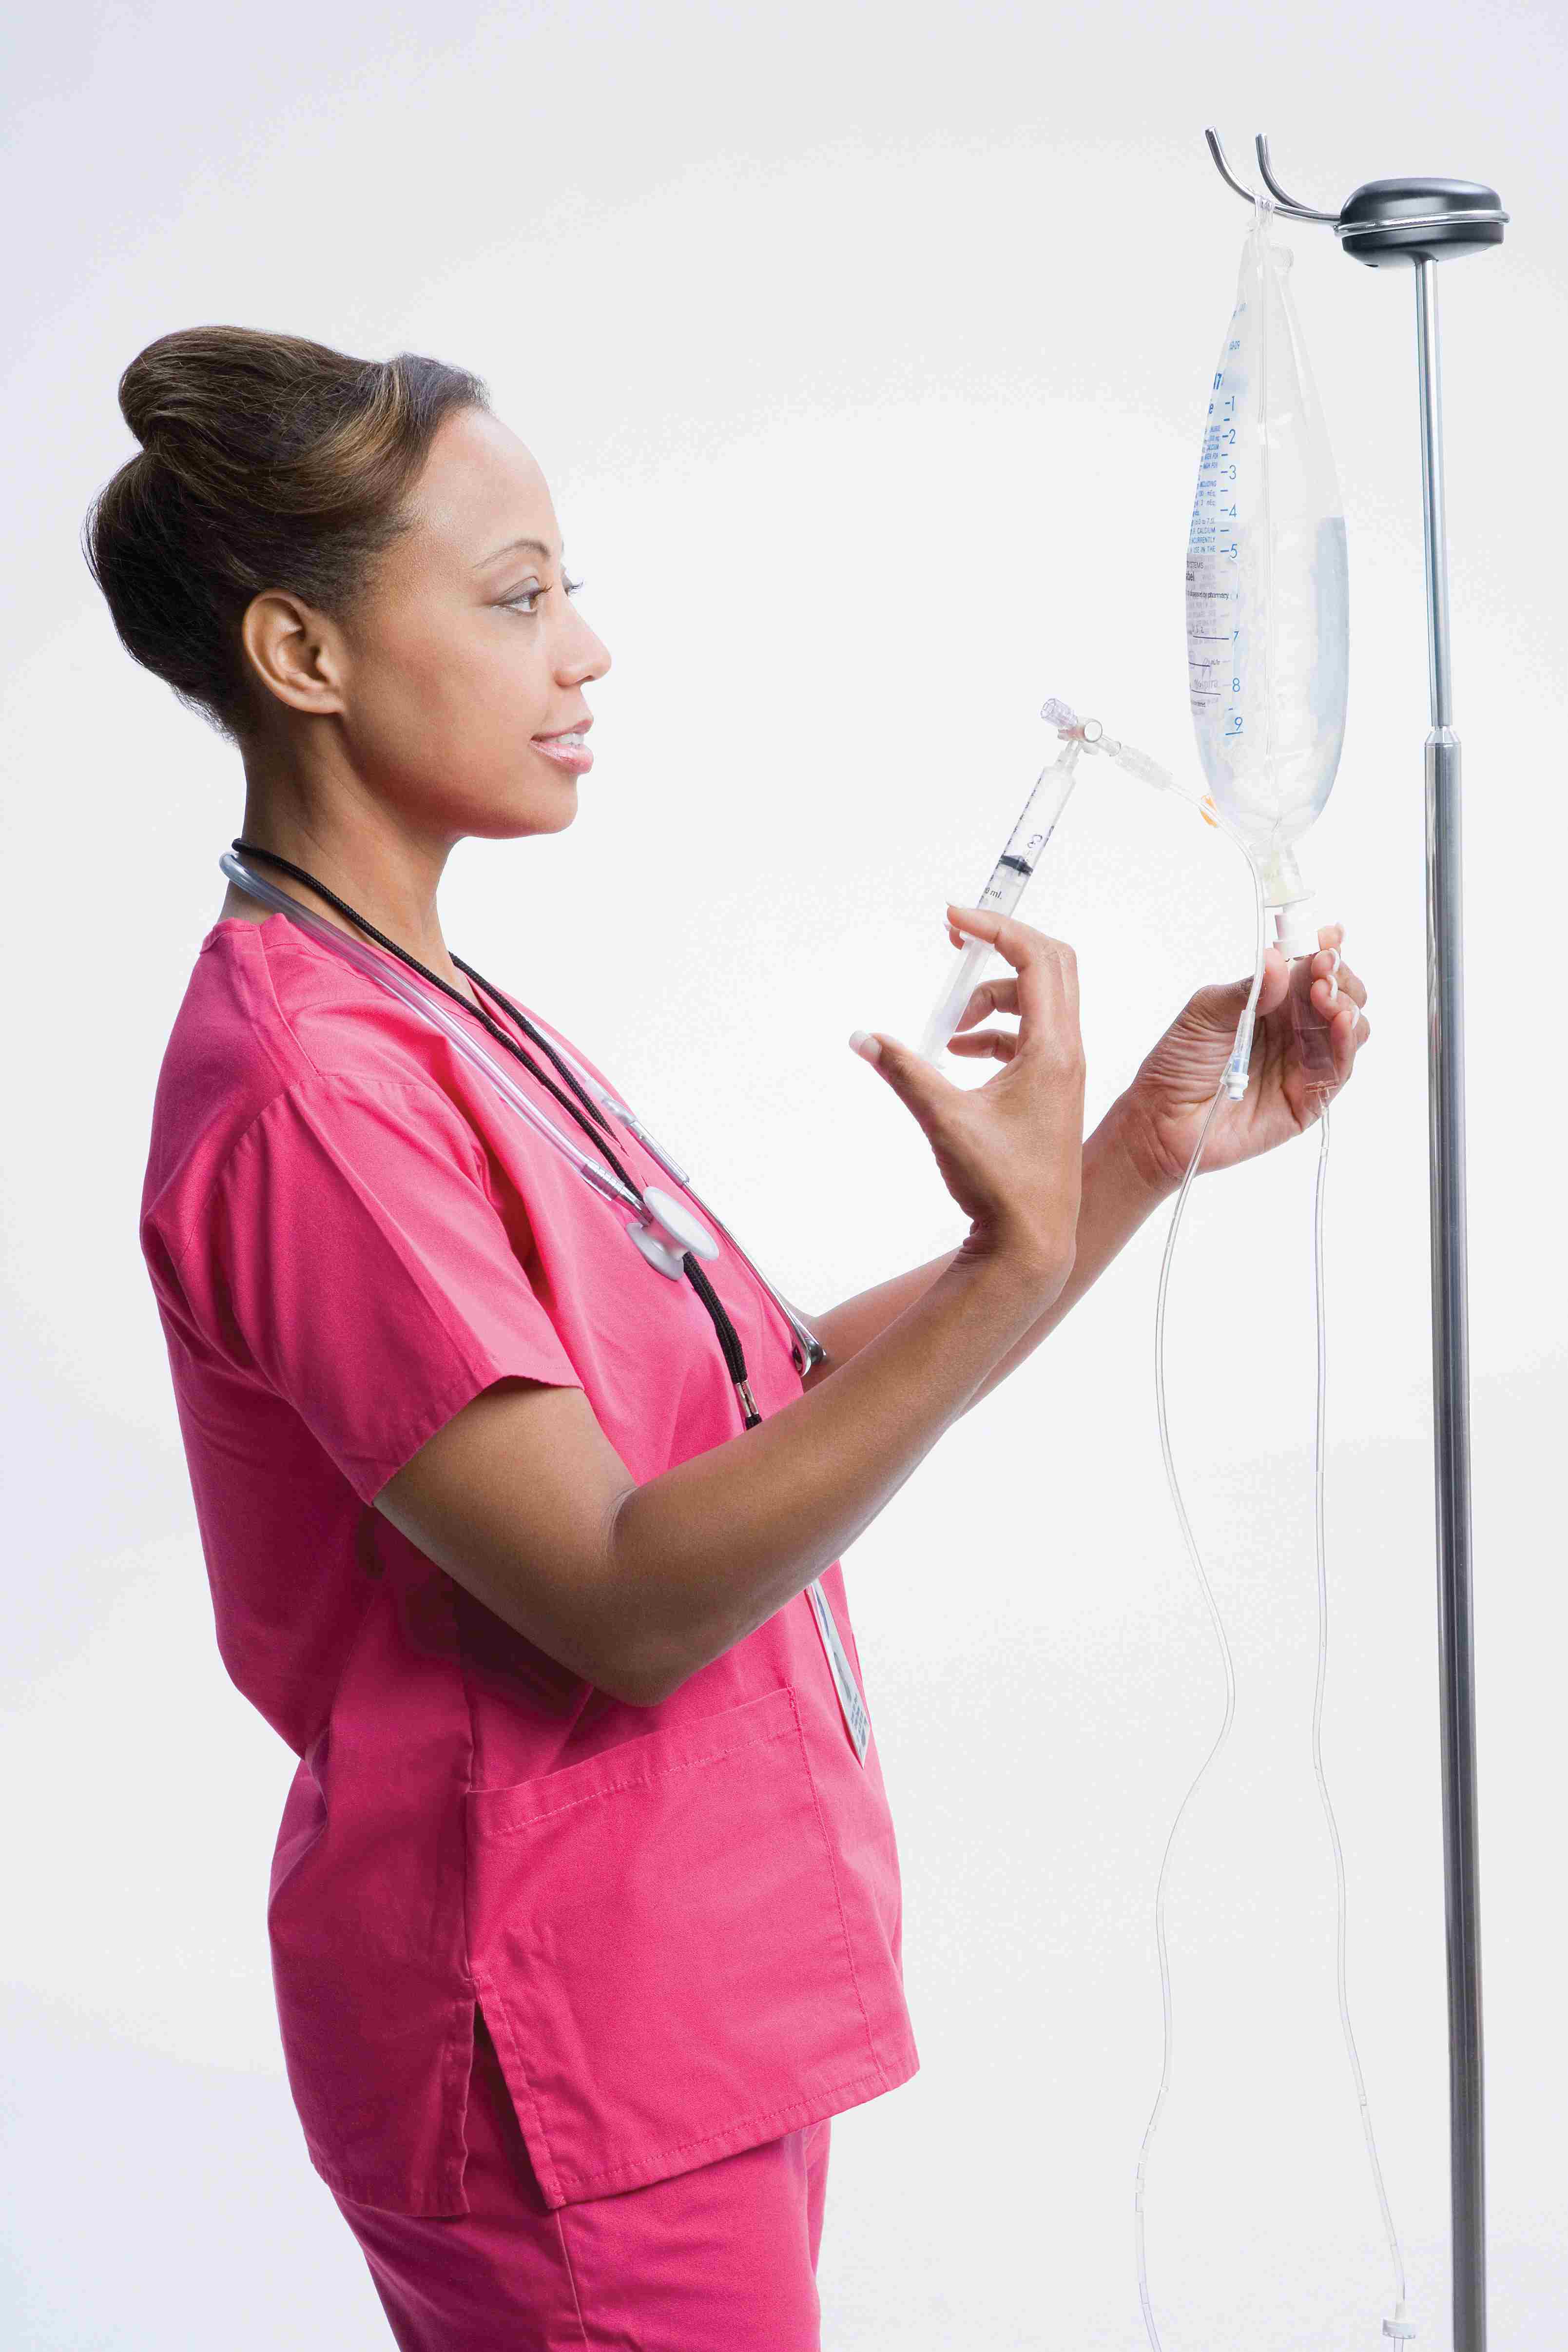 Una enfermera en matorrales rosados usa una jeringa para preparar una solución IV.